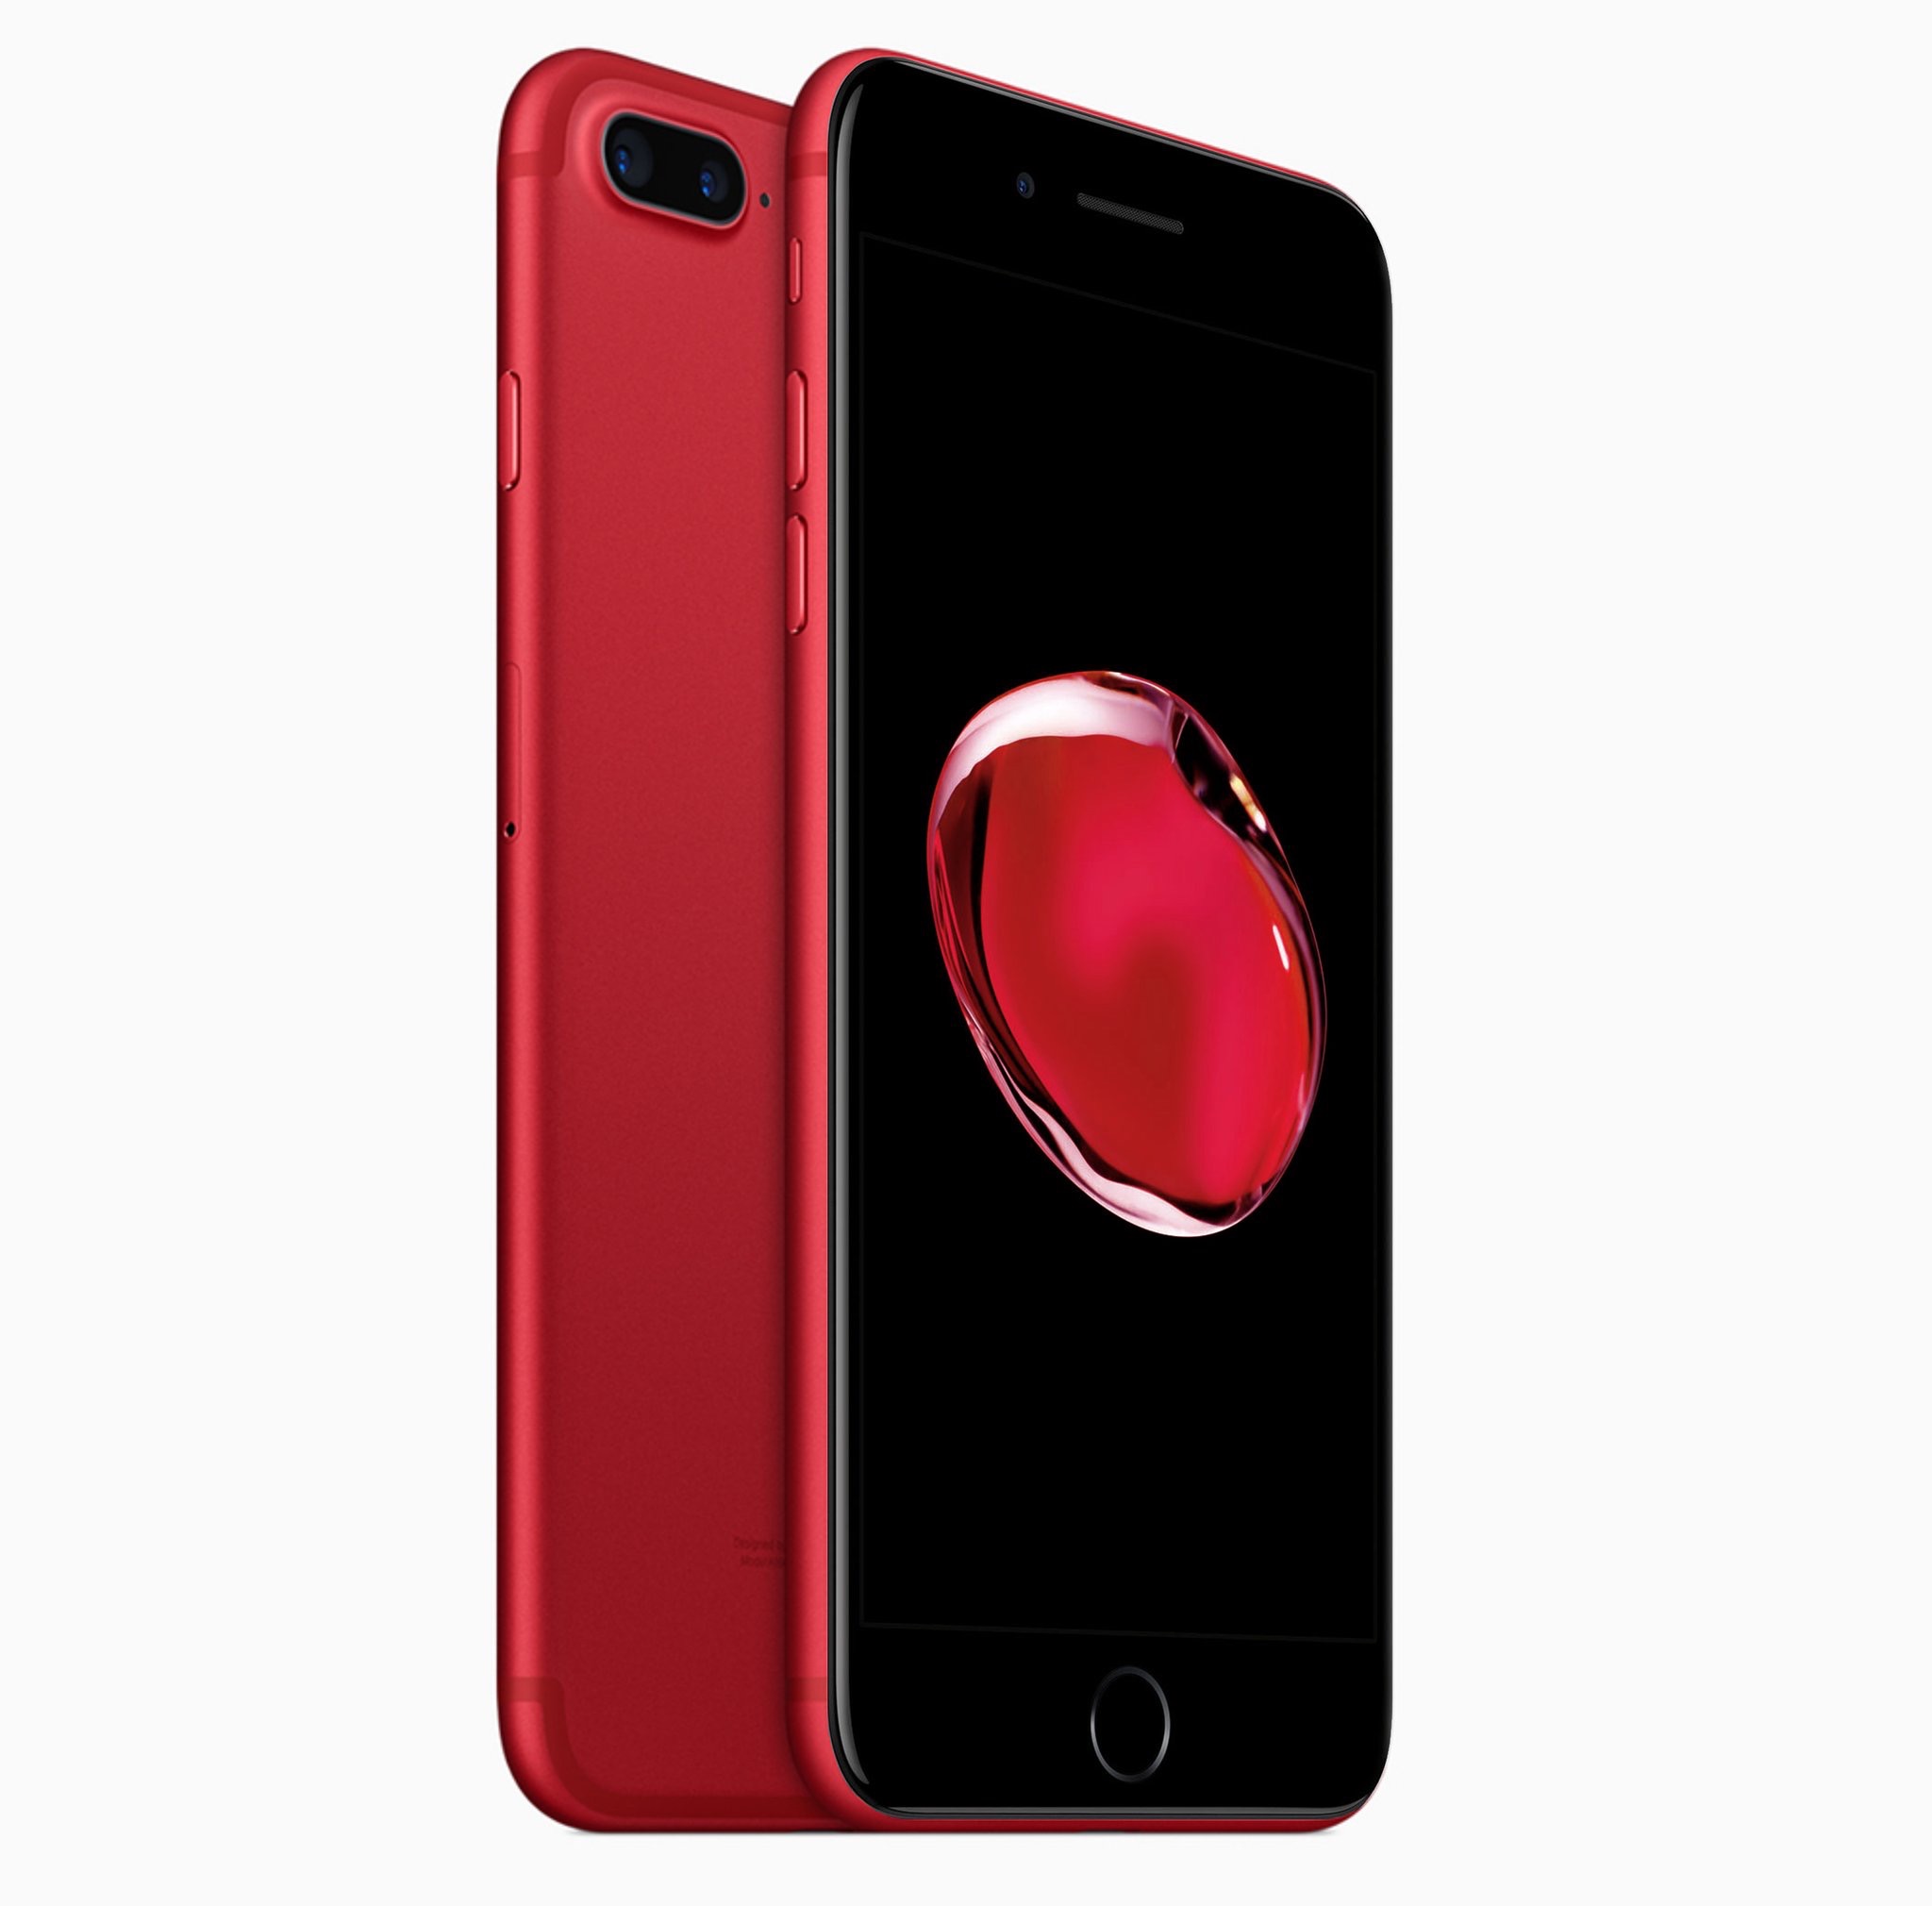 Concepto de diseño iPhone 7 rojo con frontal negro